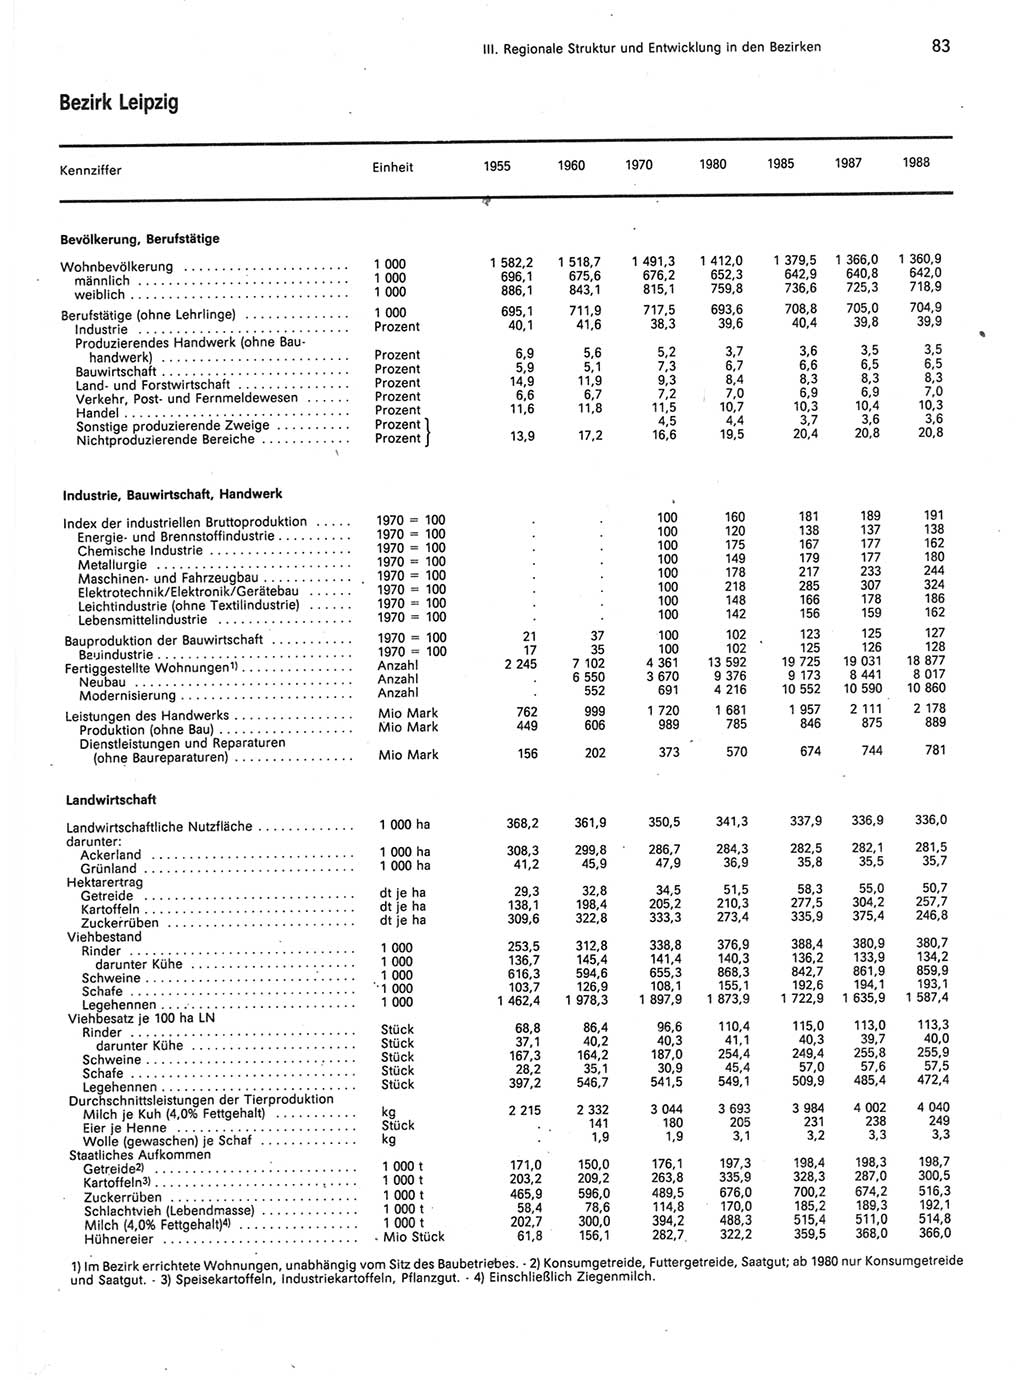 Statistisches Jahrbuch der Deutschen Demokratischen Republik (DDR) 1989, Seite 83 (Stat. Jb. DDR 1989, S. 83)